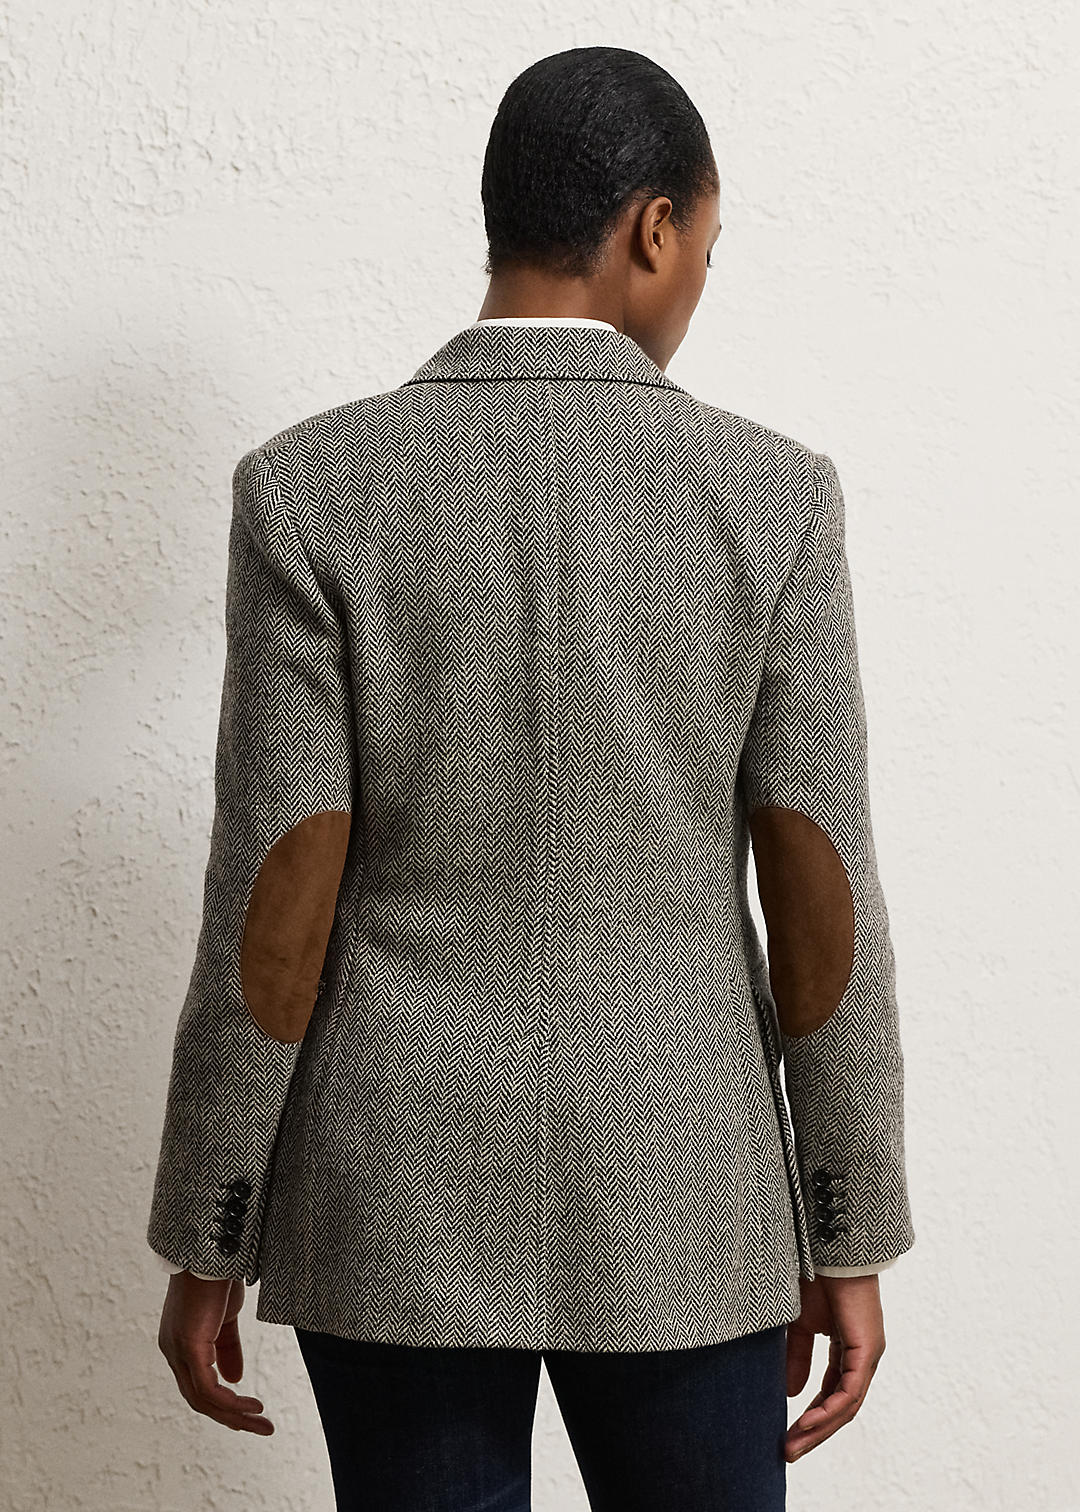 Ralph Lauren Collection The Tweed Jacket 4